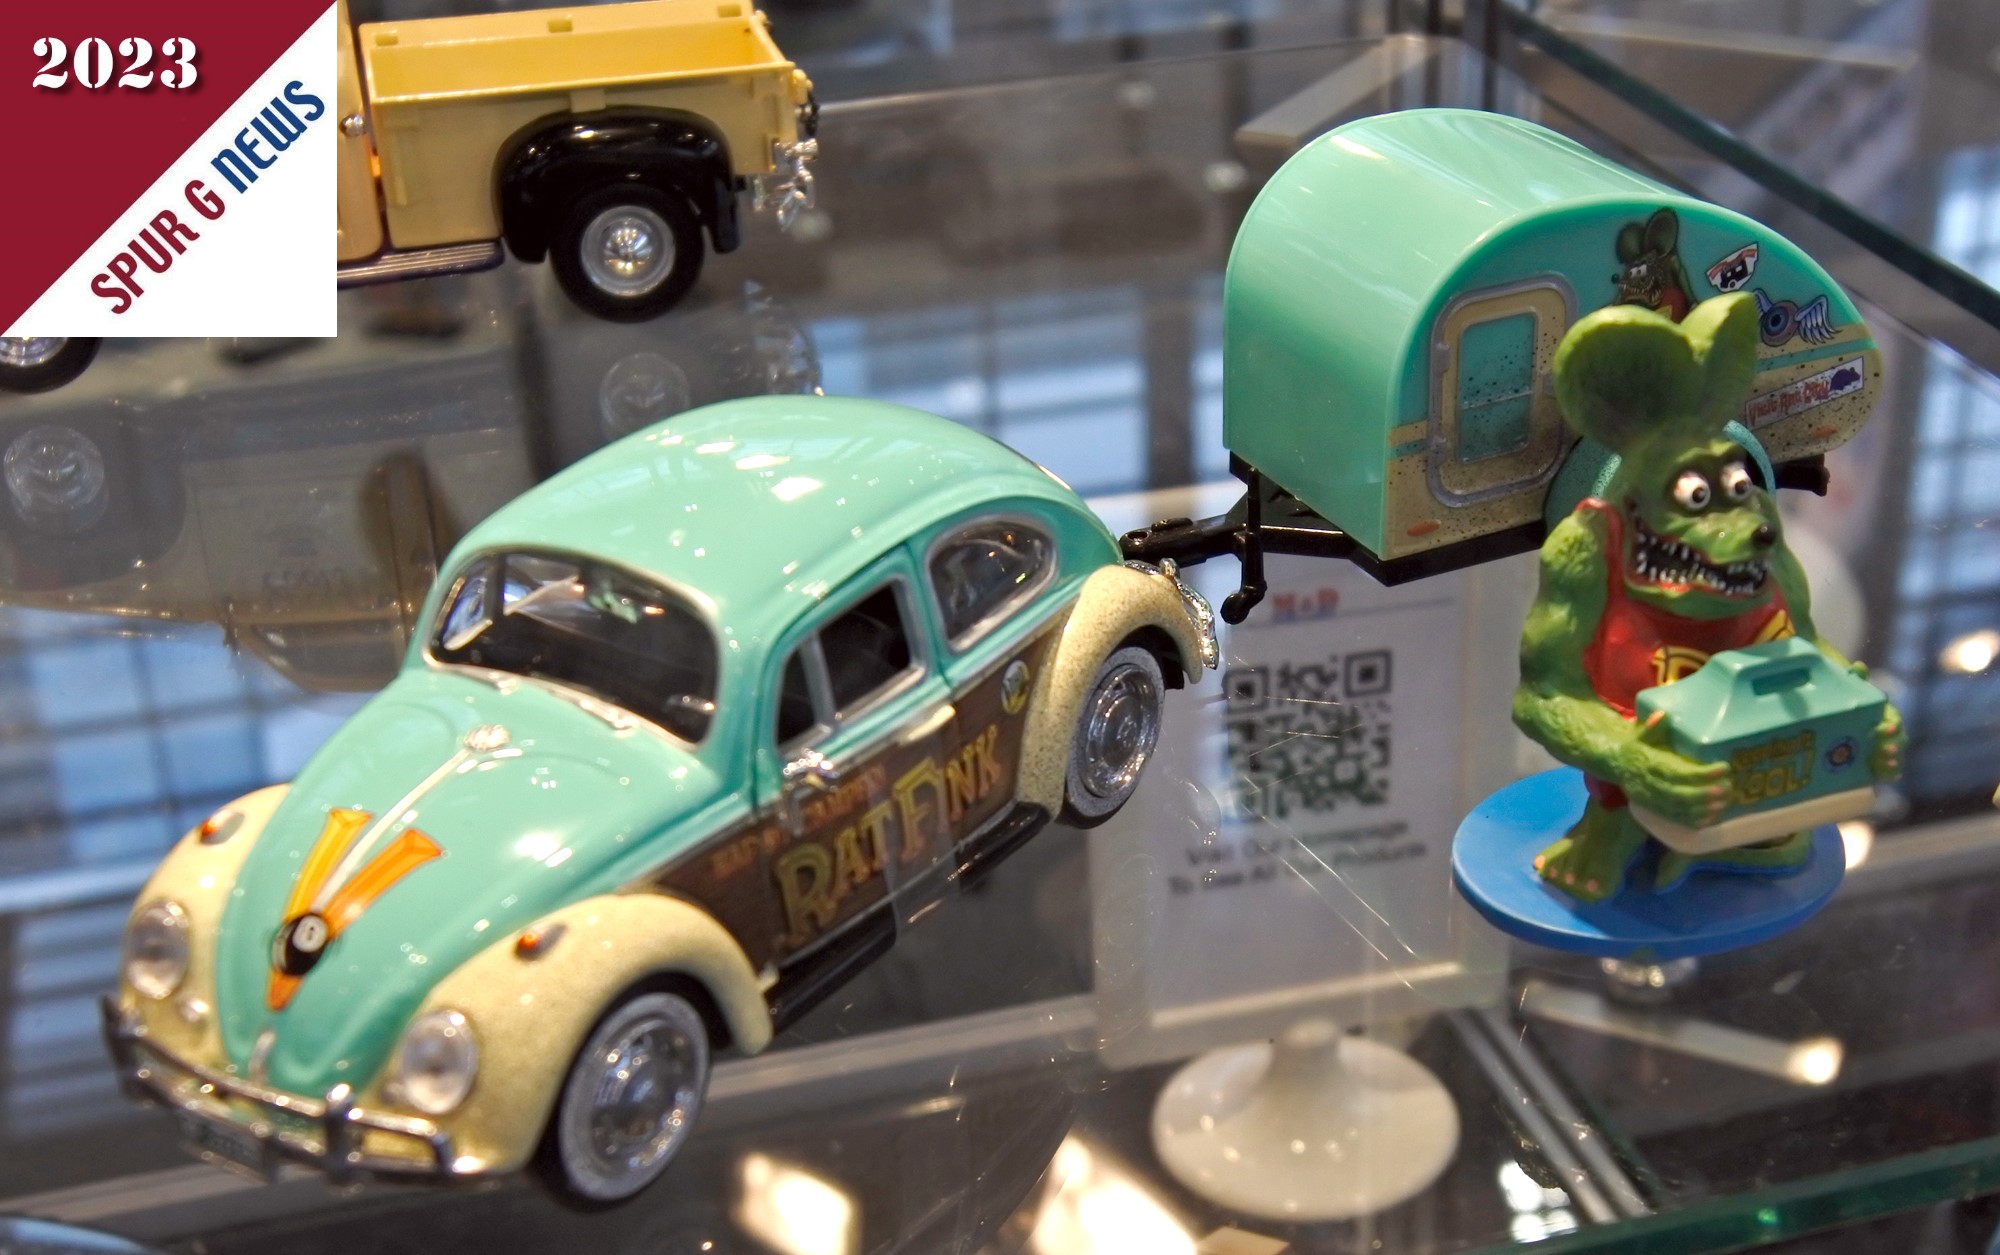 Bild links ist es ein Volkswagen Kfer mit kleinem runden Anhnger in Tropfenform und der Bezeichnung "Rat Fink". Eine Cartoonfigur aus der Hot-Rod Szene. 